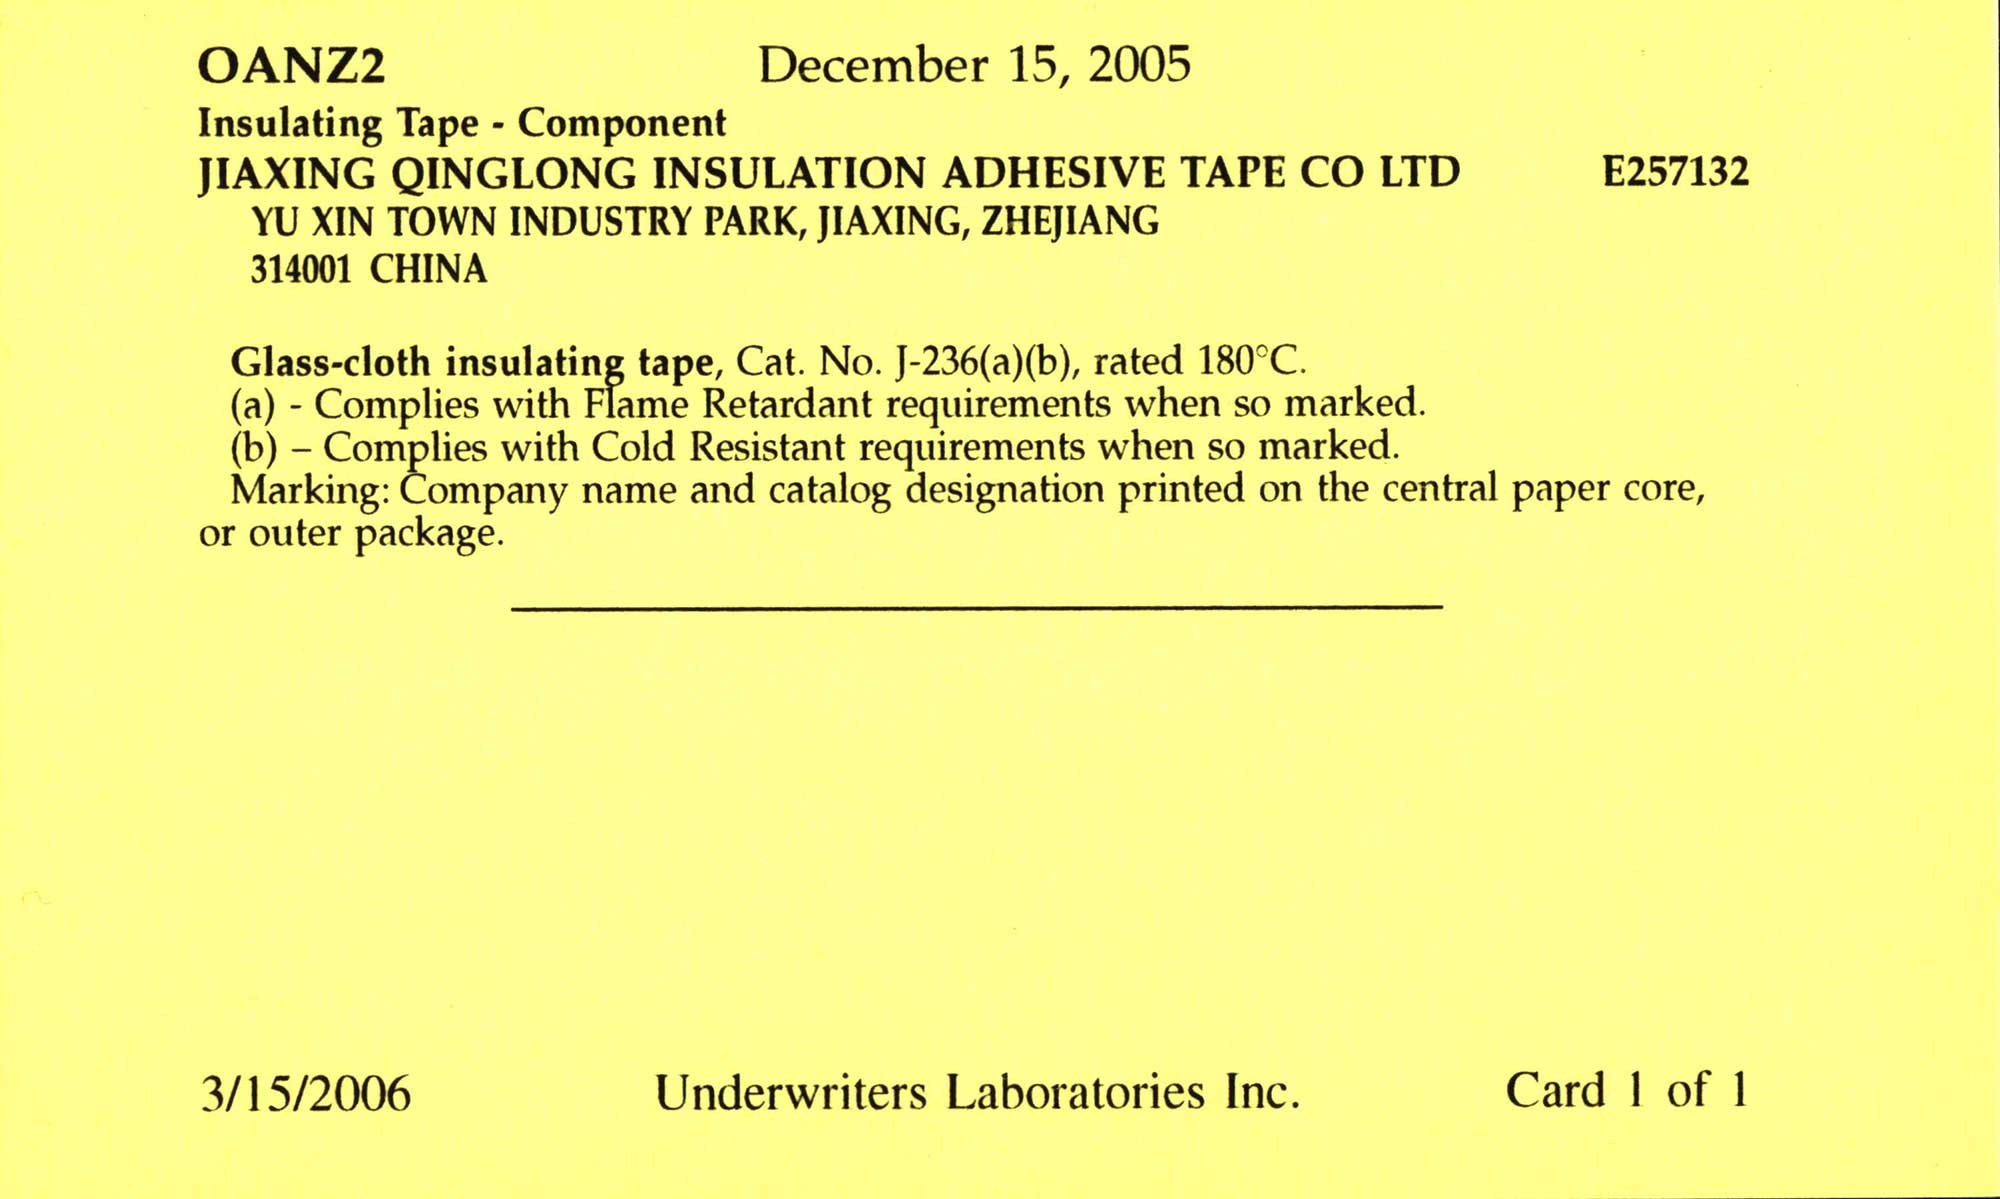 J-236 玻璃布胶带产品通过UL认证，认证号: E257312